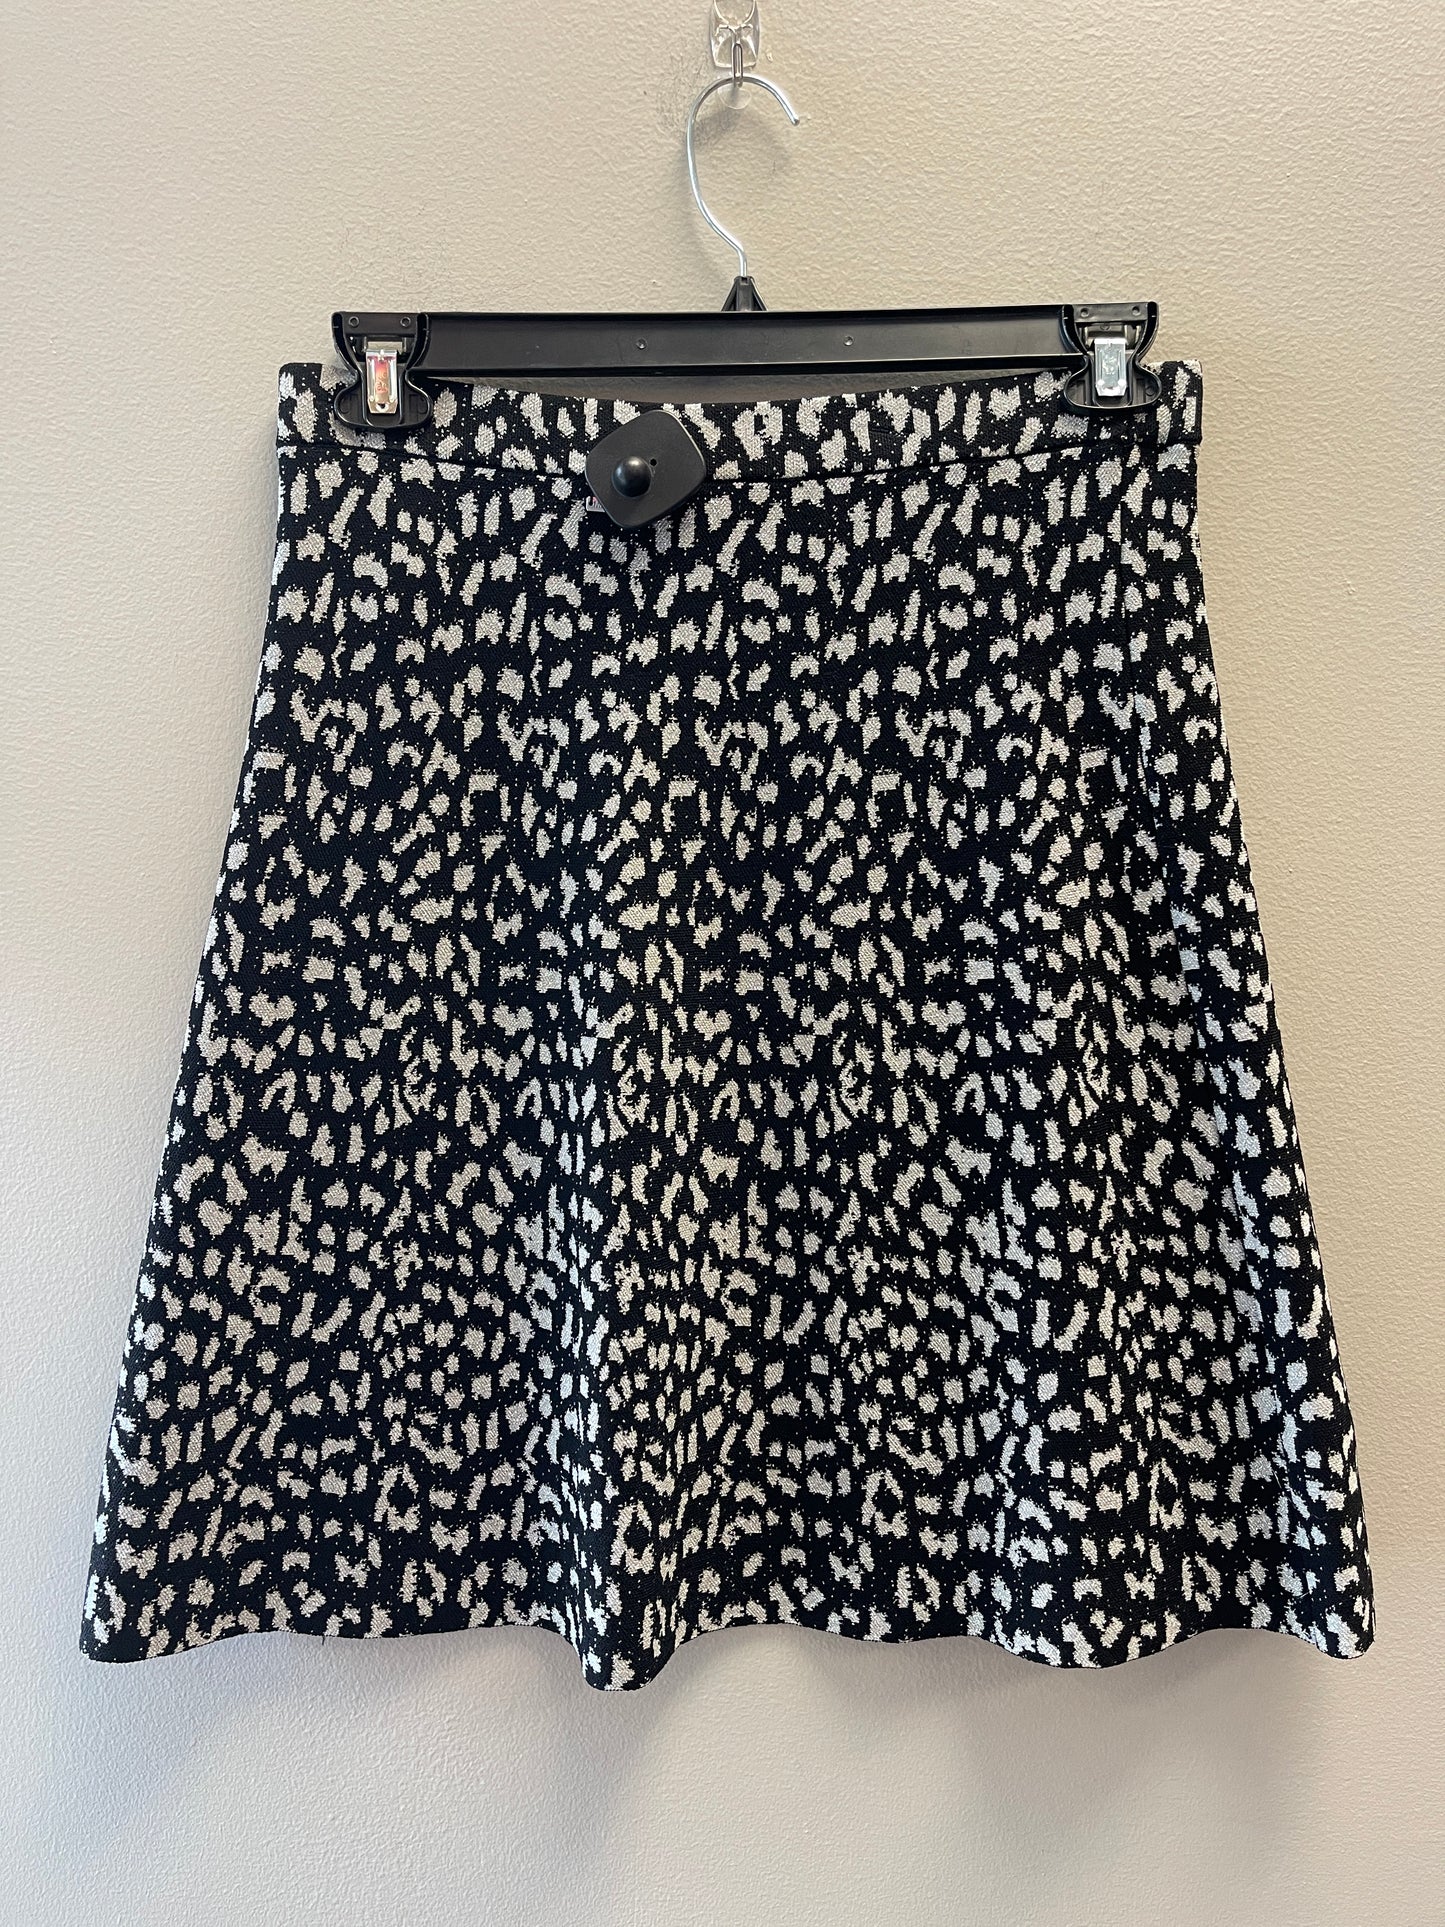 Skirt Mini & Short By Michael Kors  Size: 8